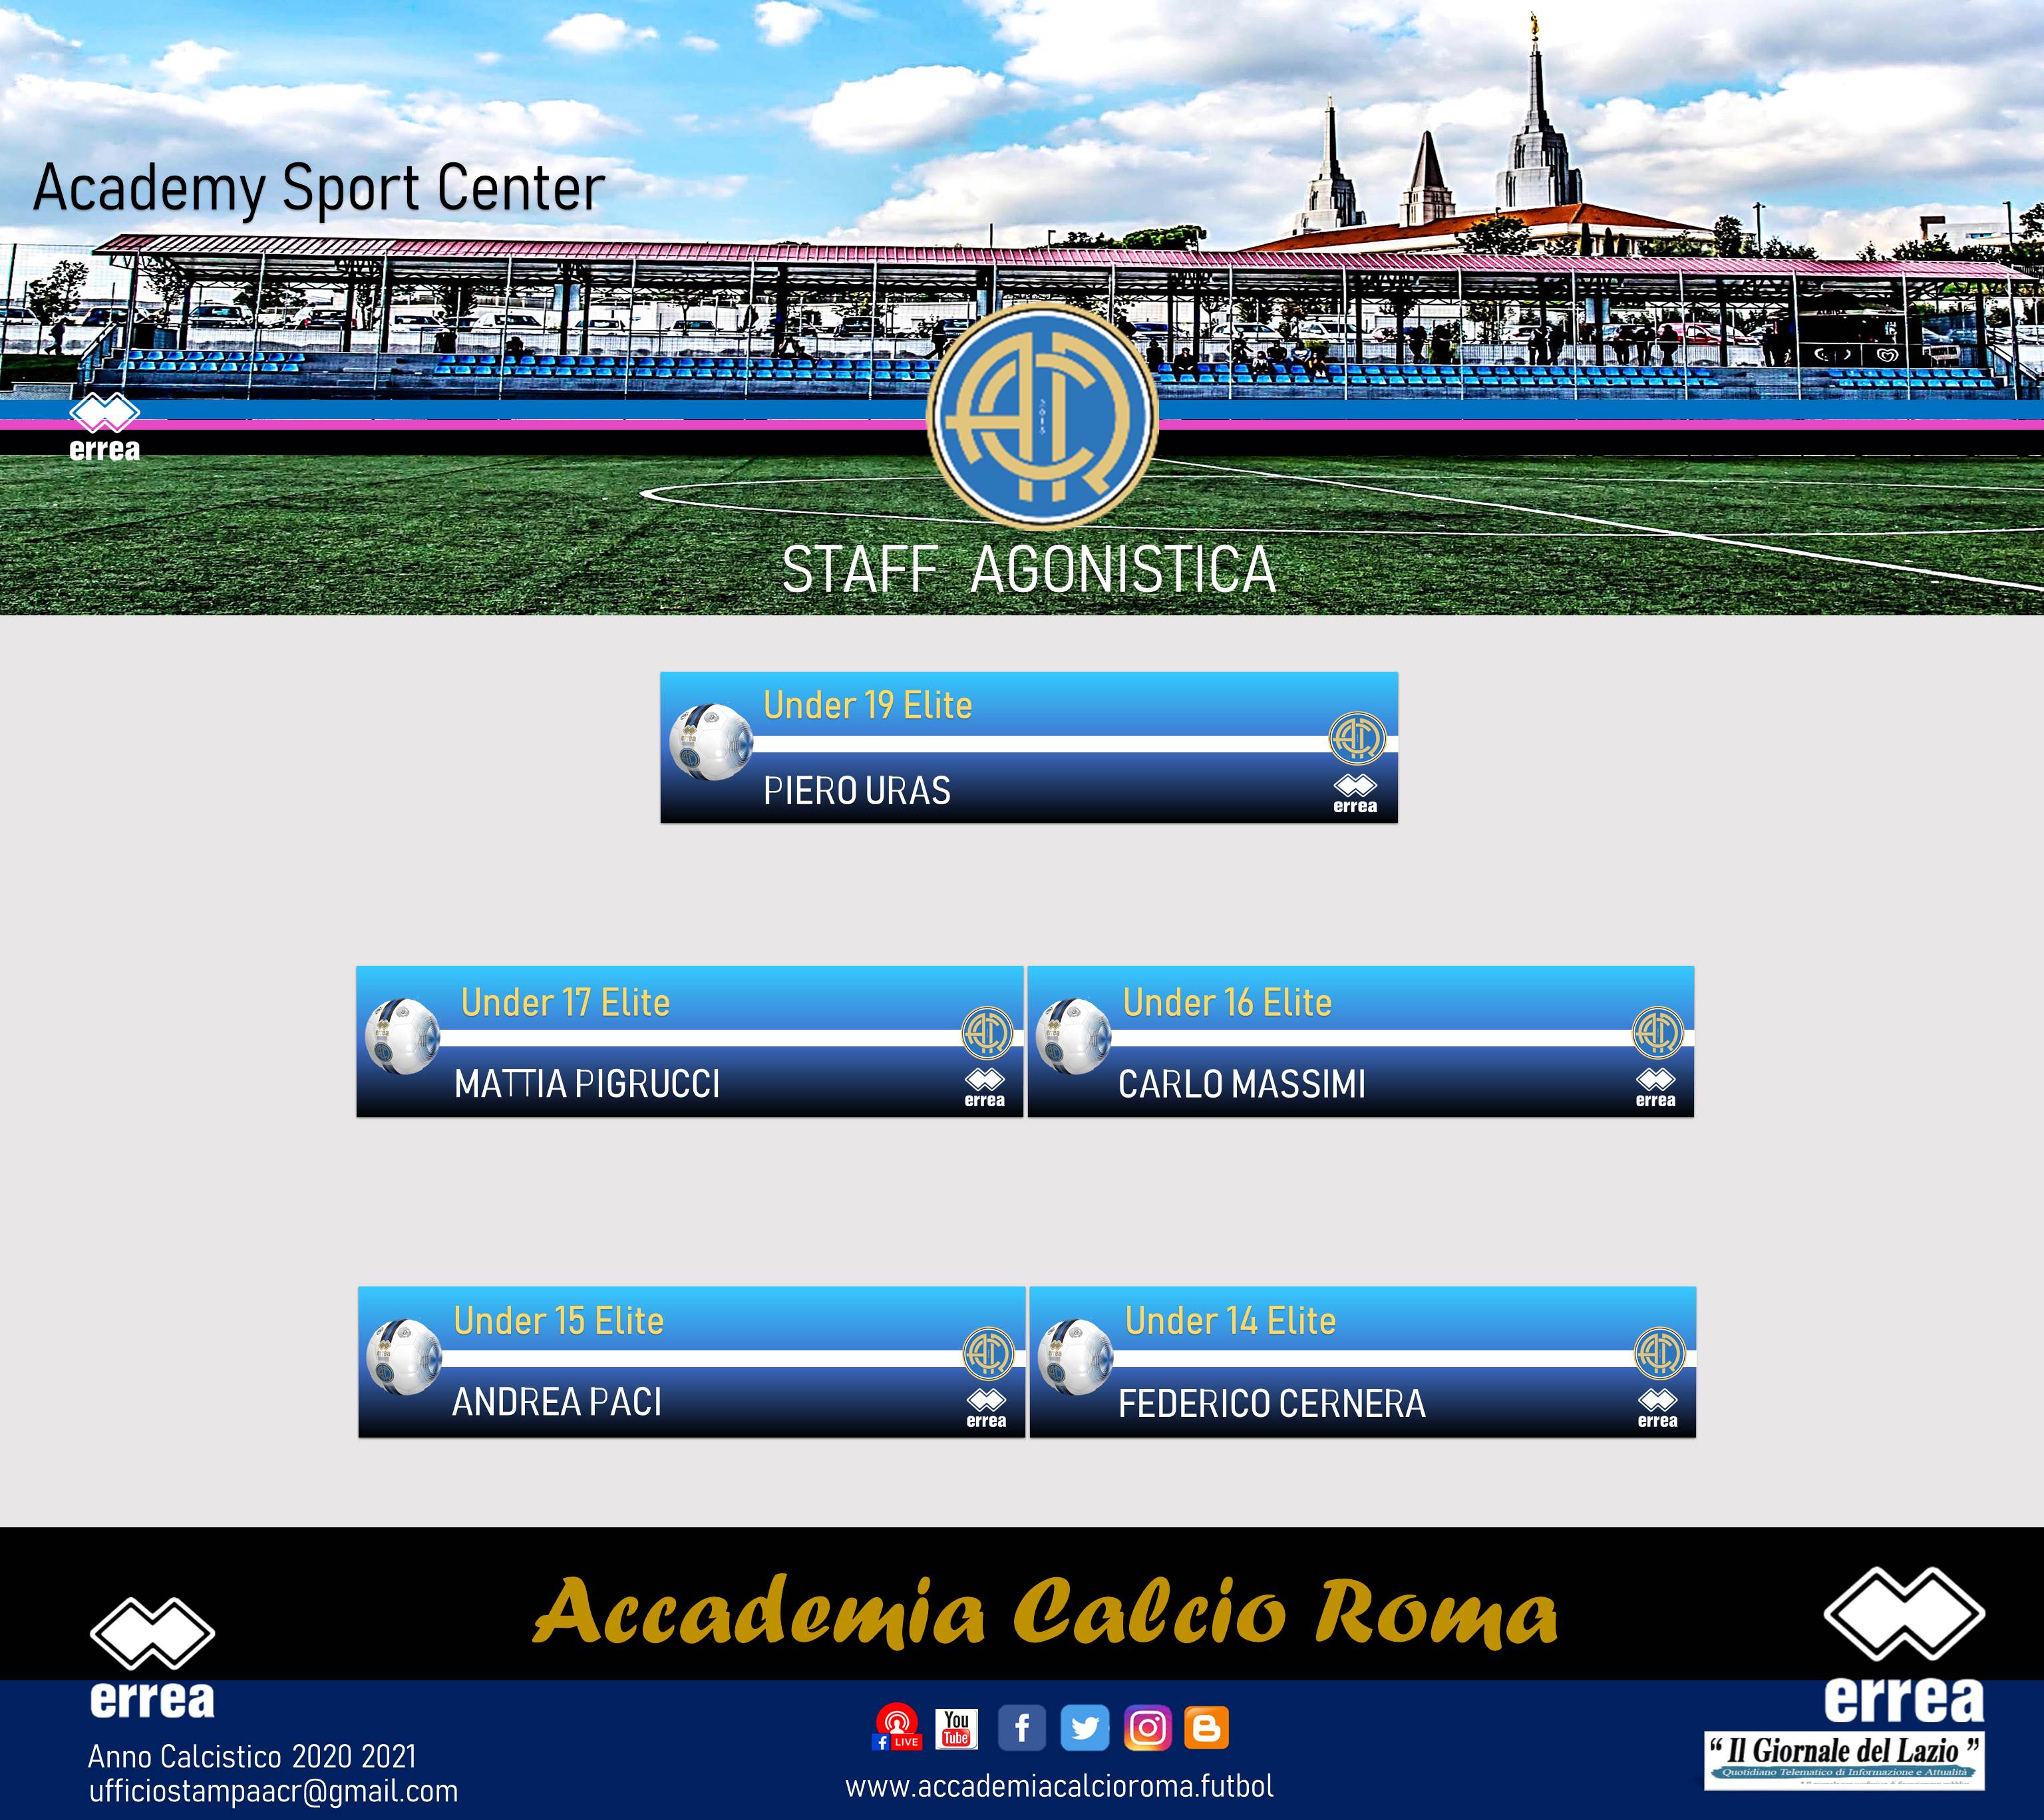 Accademia Calcio Roma Staff Agonistica